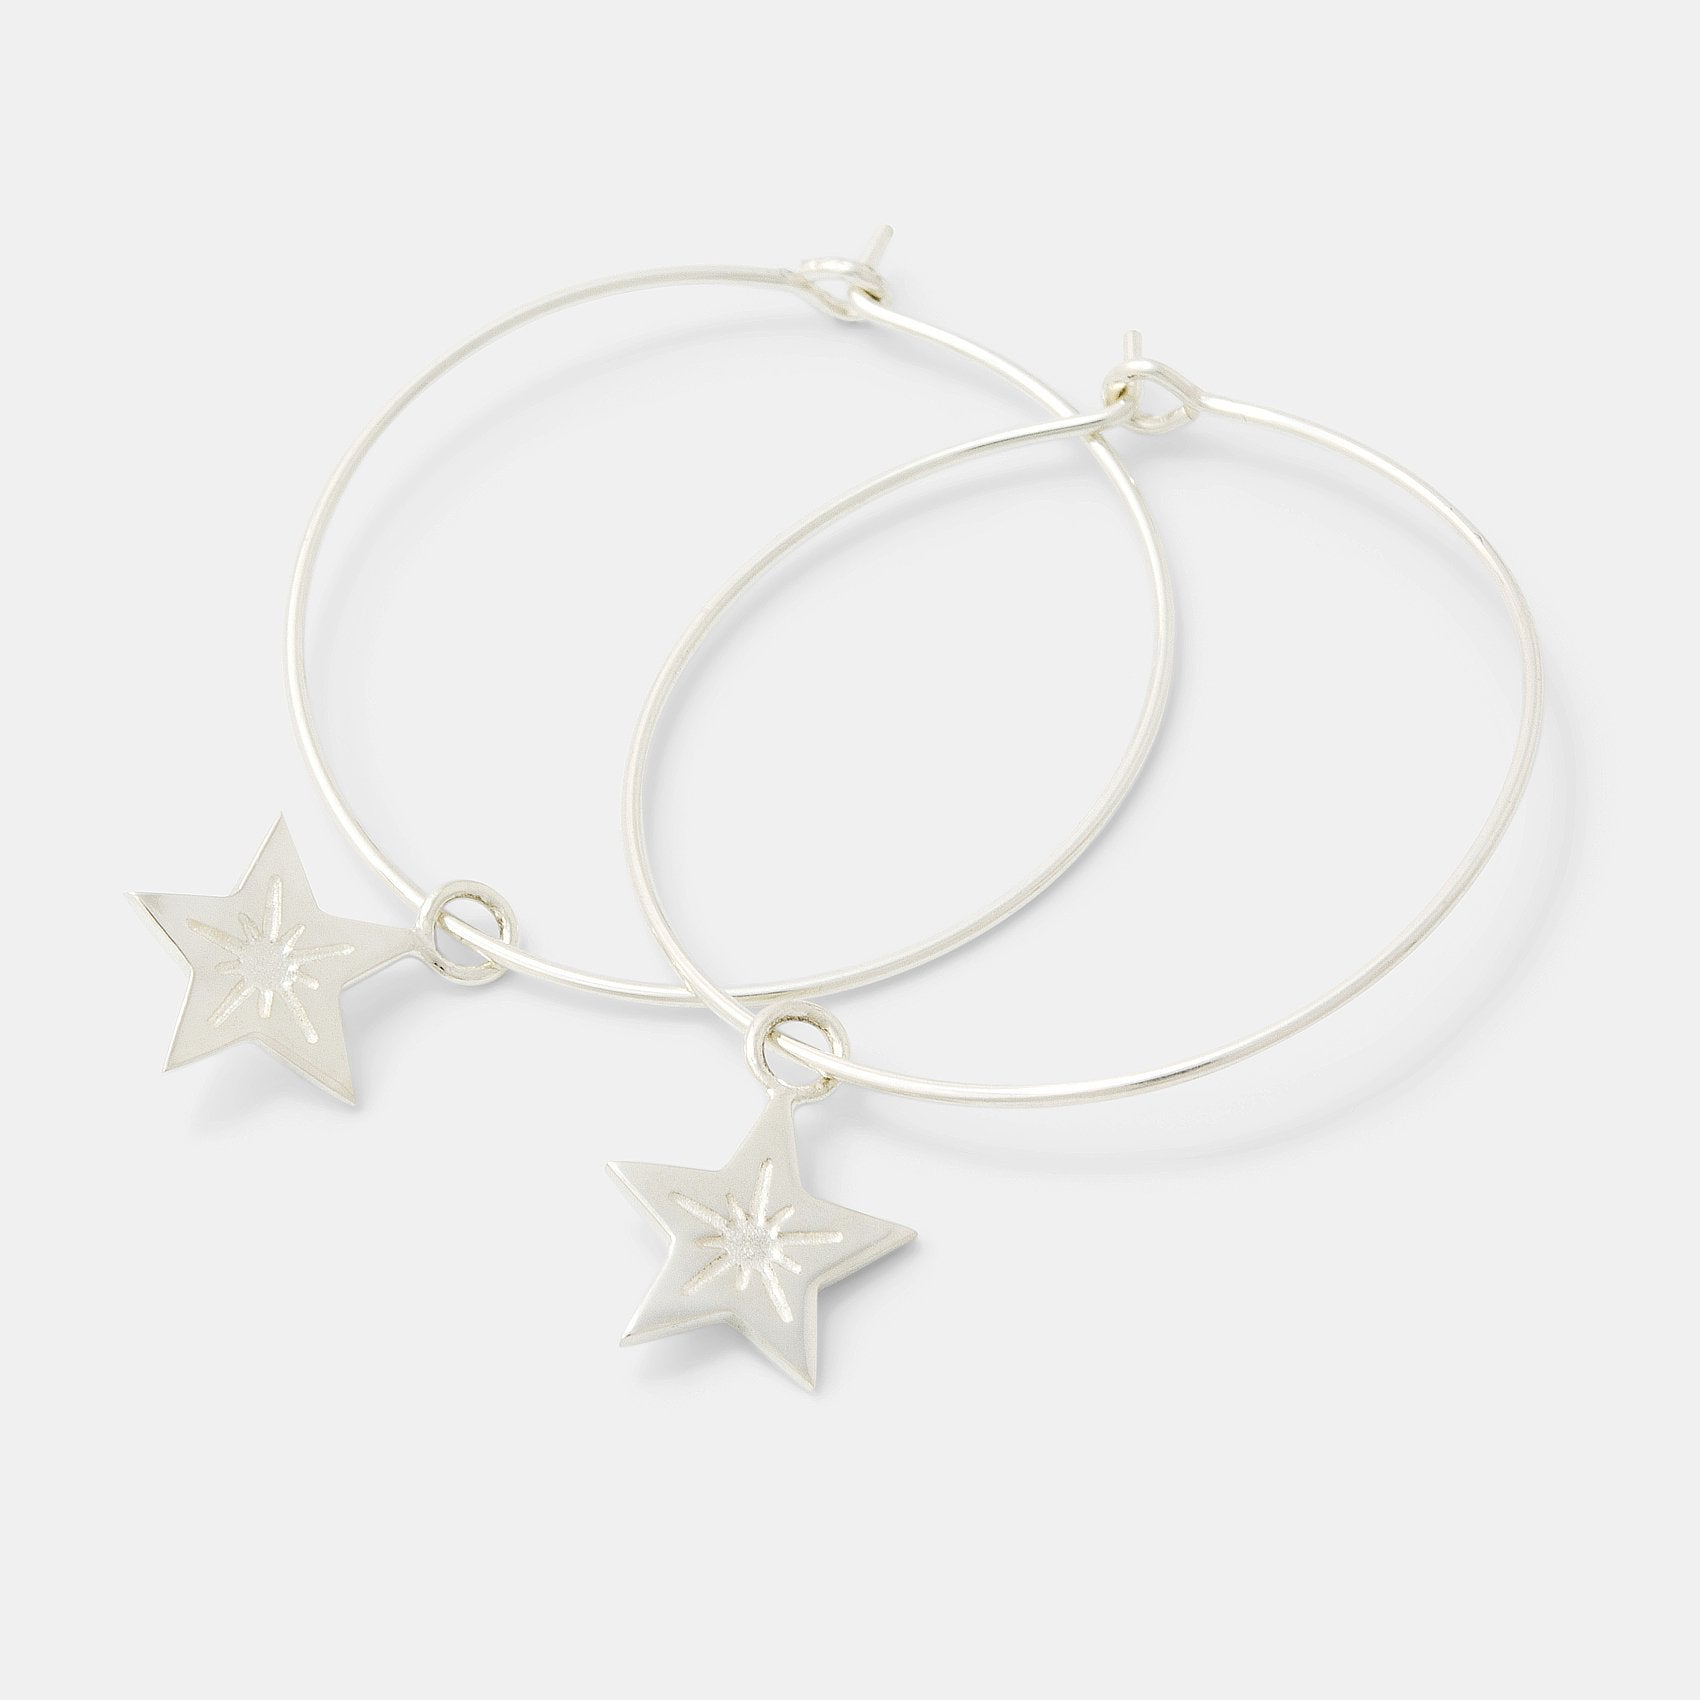 Little star hoop earrings - Simone Walsh Jewellery Australia